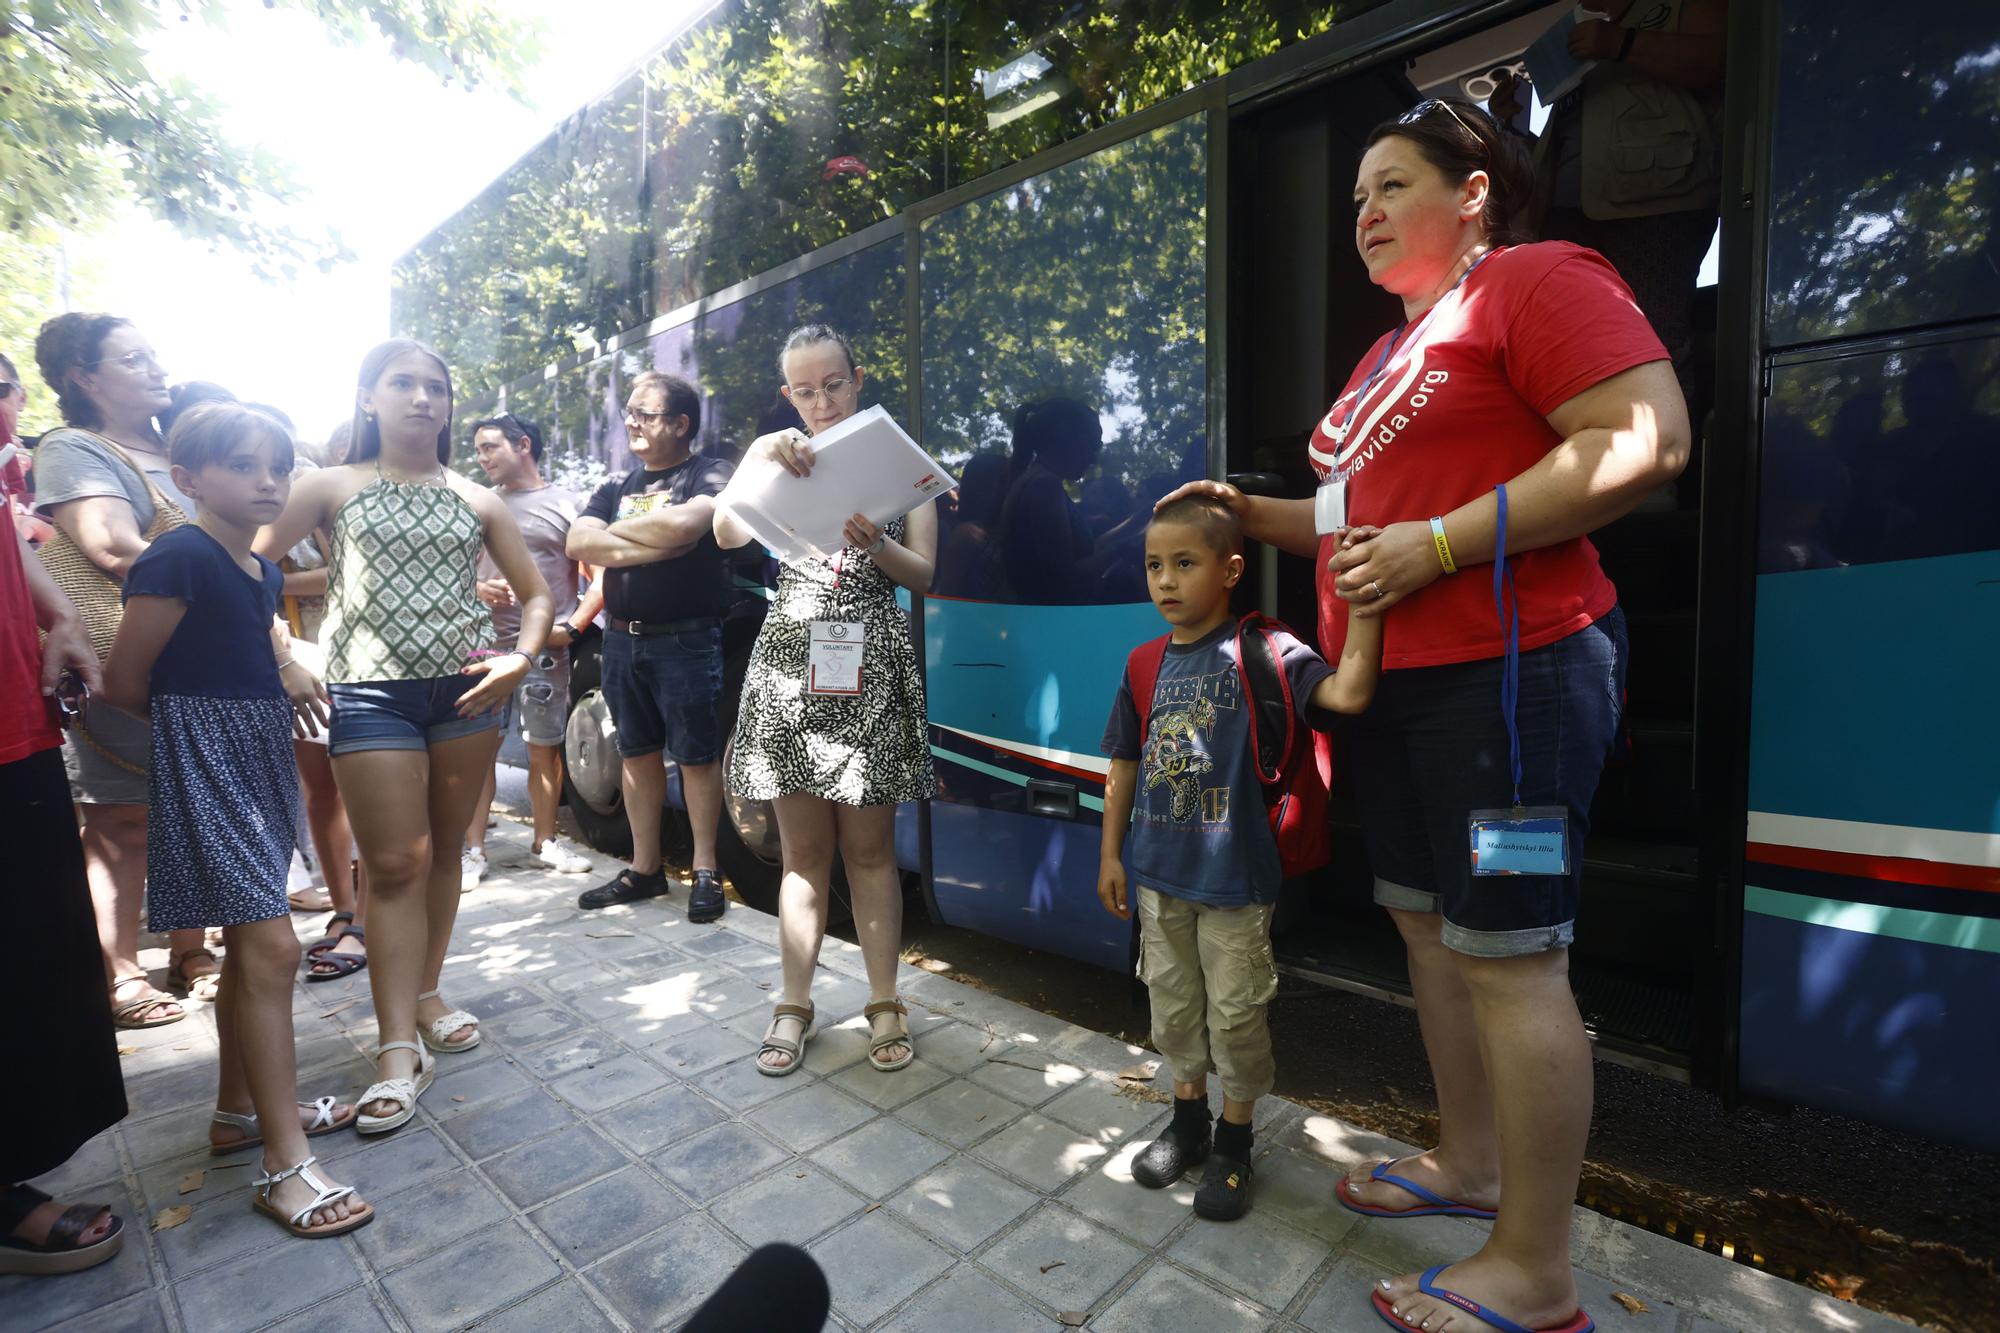 53 niños ucranianos llegan para pasar el verano en familias de acogida